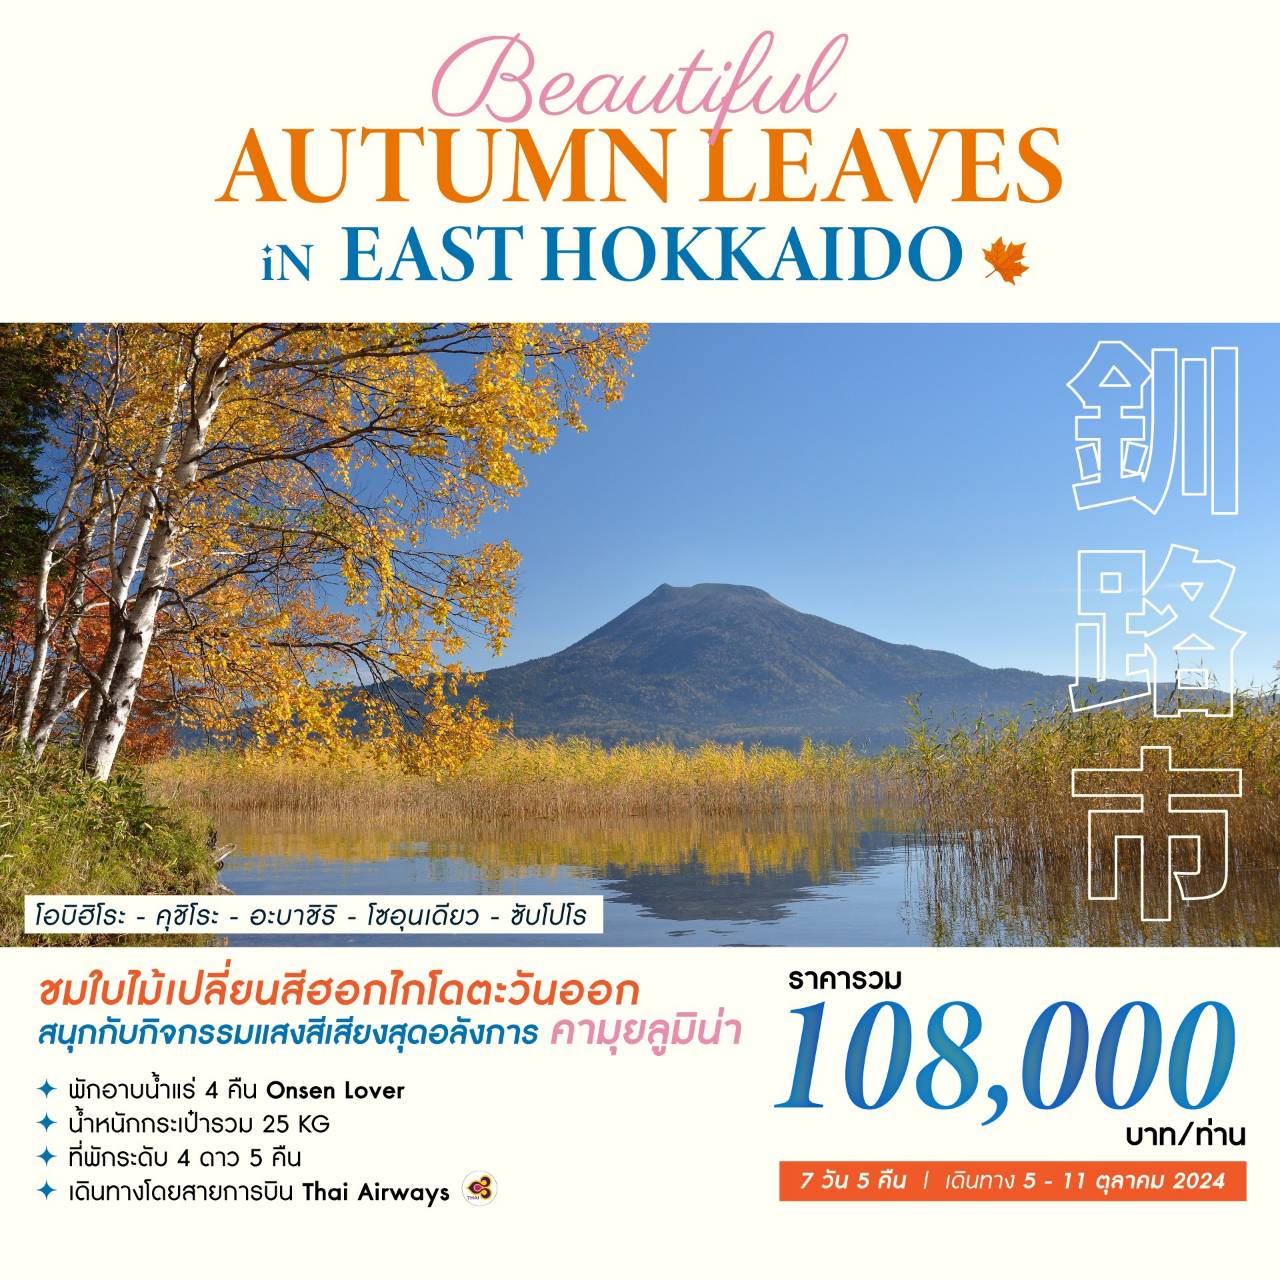 ทัวร์ญี่ปุ่น BEAUTIFUL AUTUMN LEAVES IN EAST HOKKAIDO 7วัน 5คืน (TG)